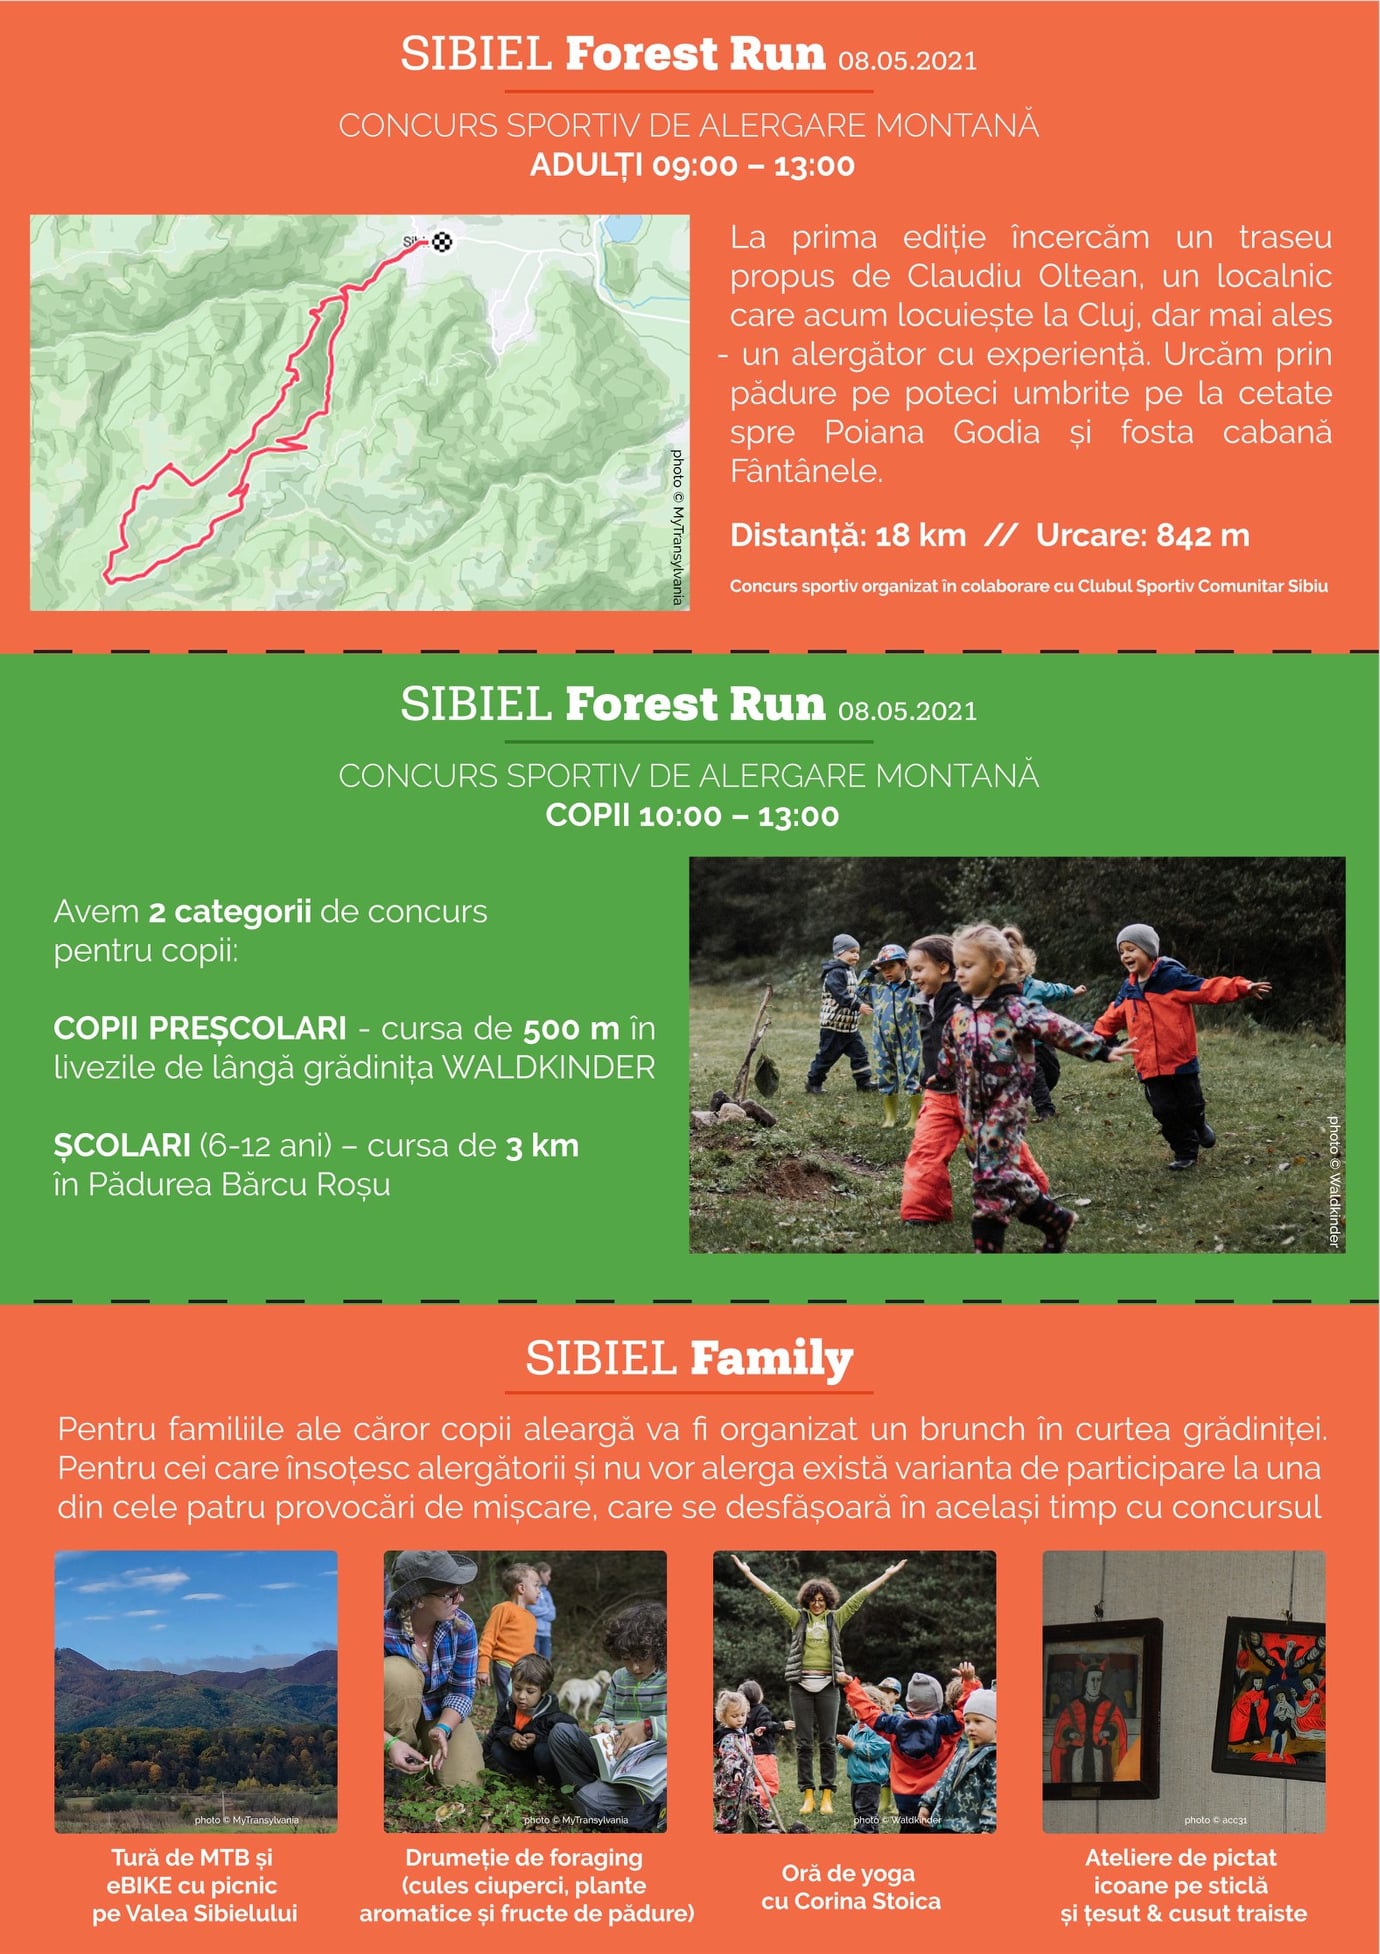 Sibiel Forest Run